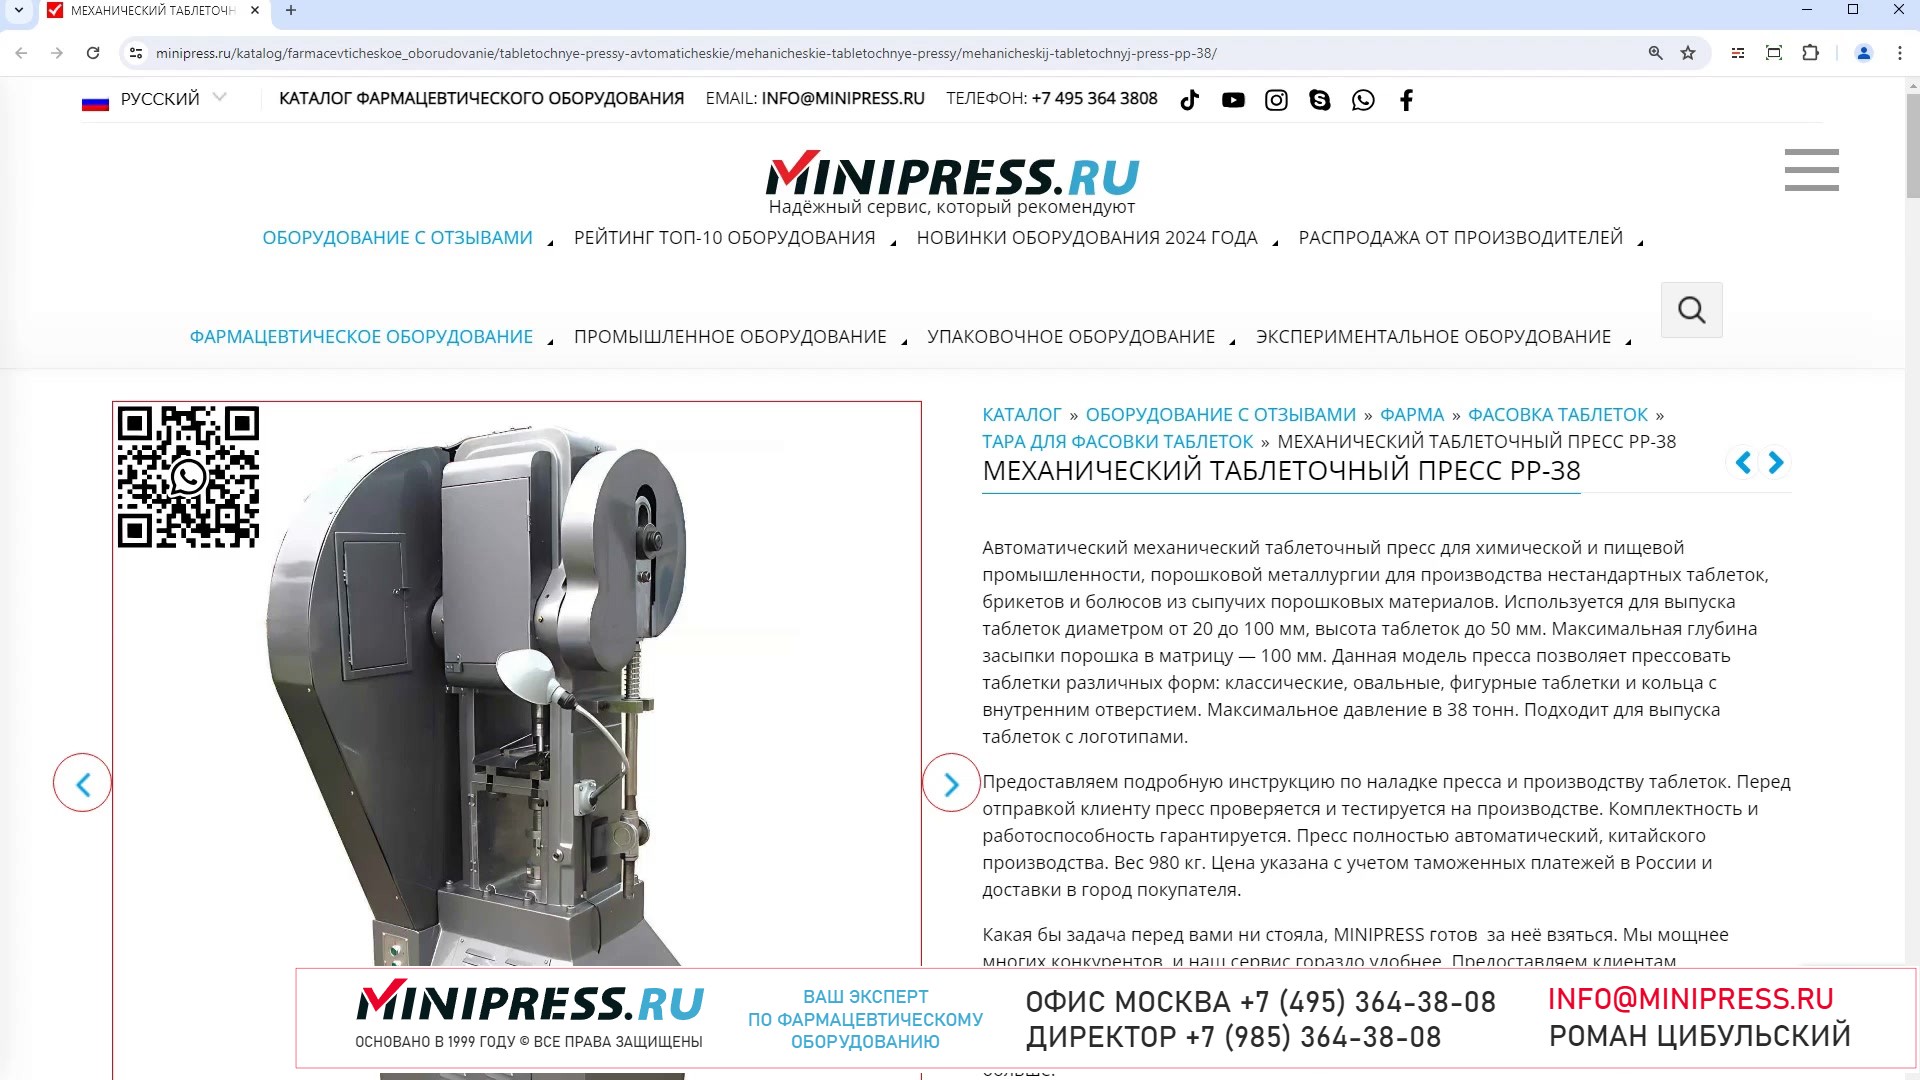 Minipress.ru Механический таблеточный пресс PP-38